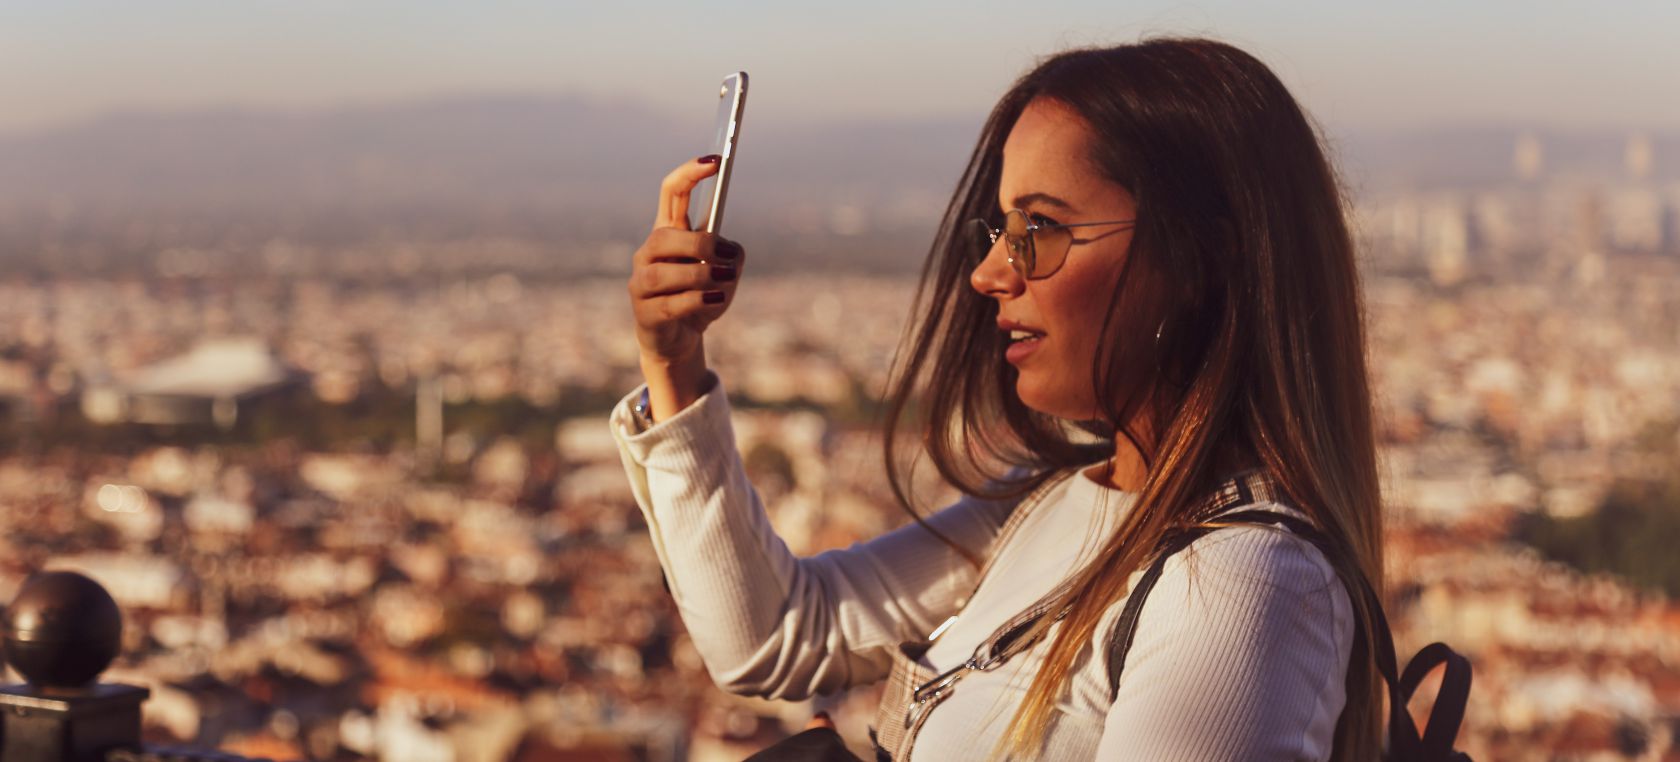 15 trucos para salir siempre bien en los selfies y en cualquier foto